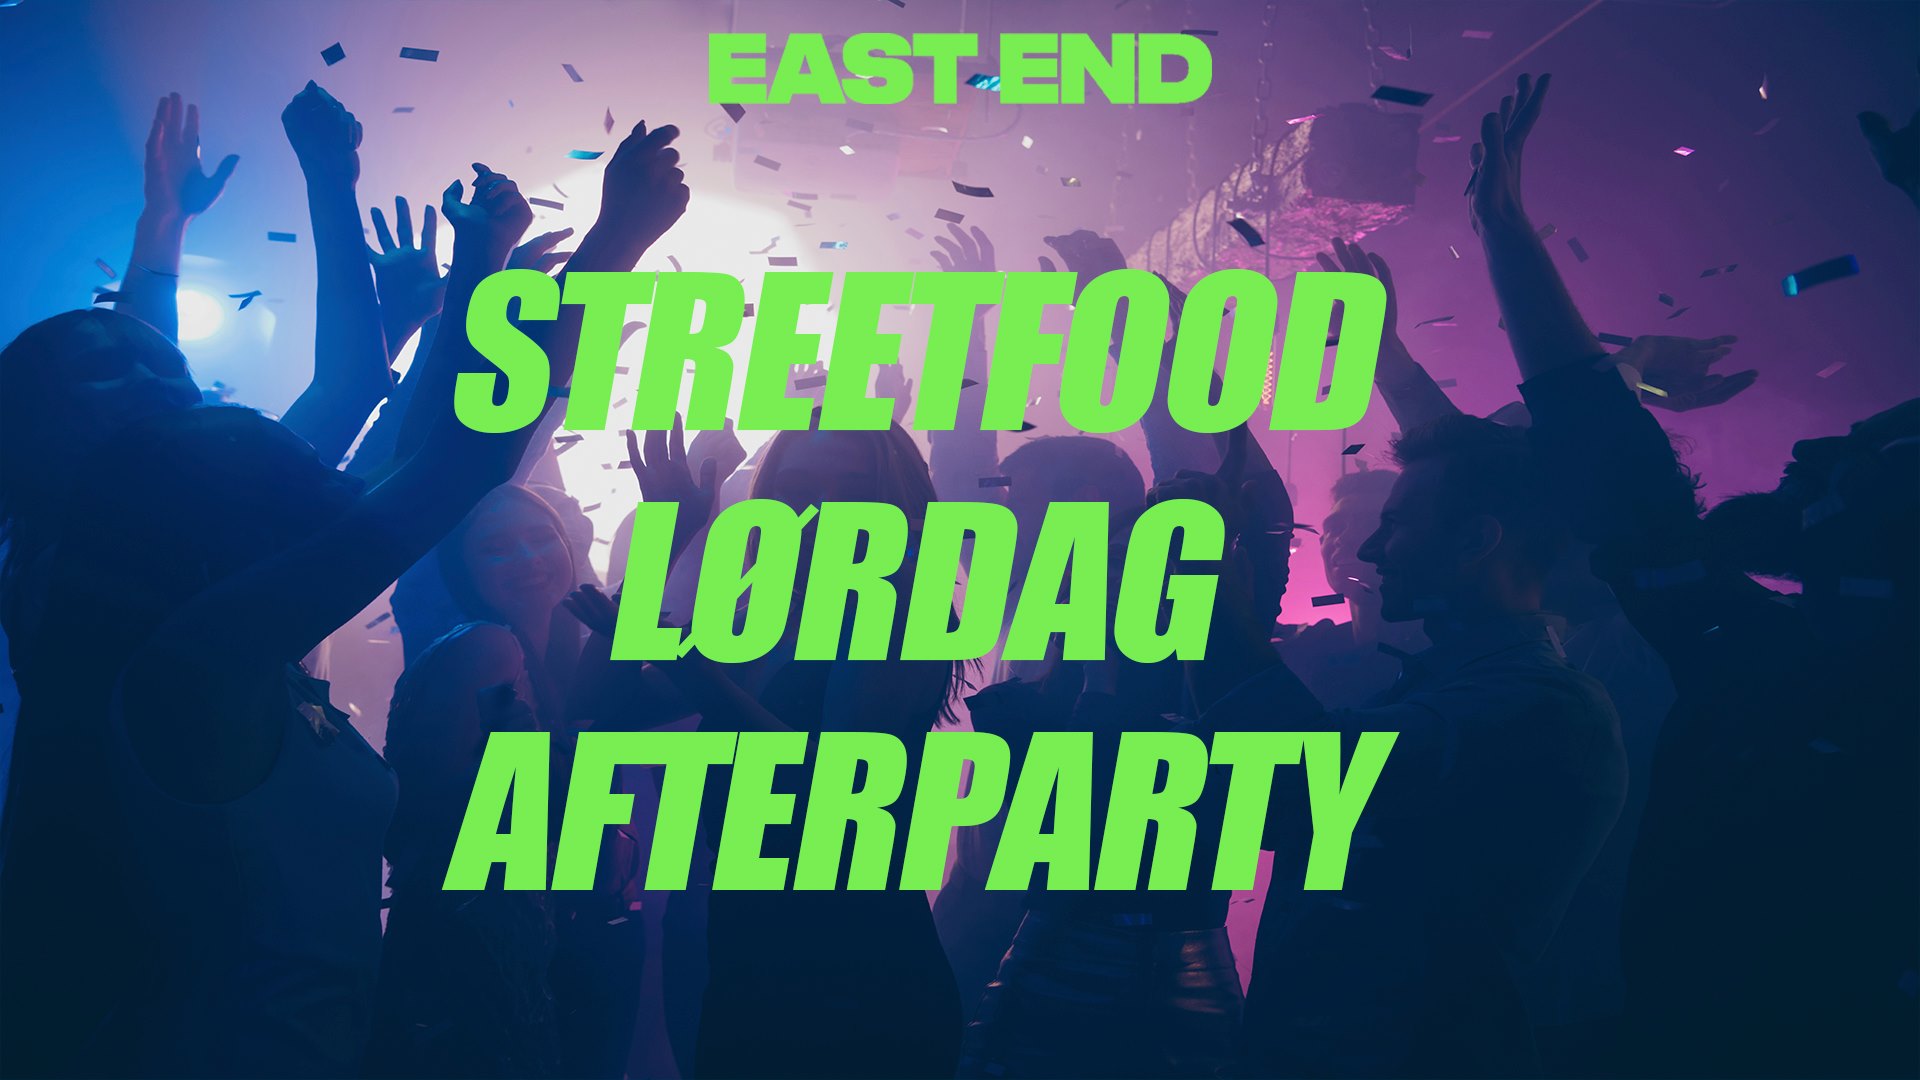 STREET FOOD FESTIVAL LØRDAG - AFTERPARTY // EAST END